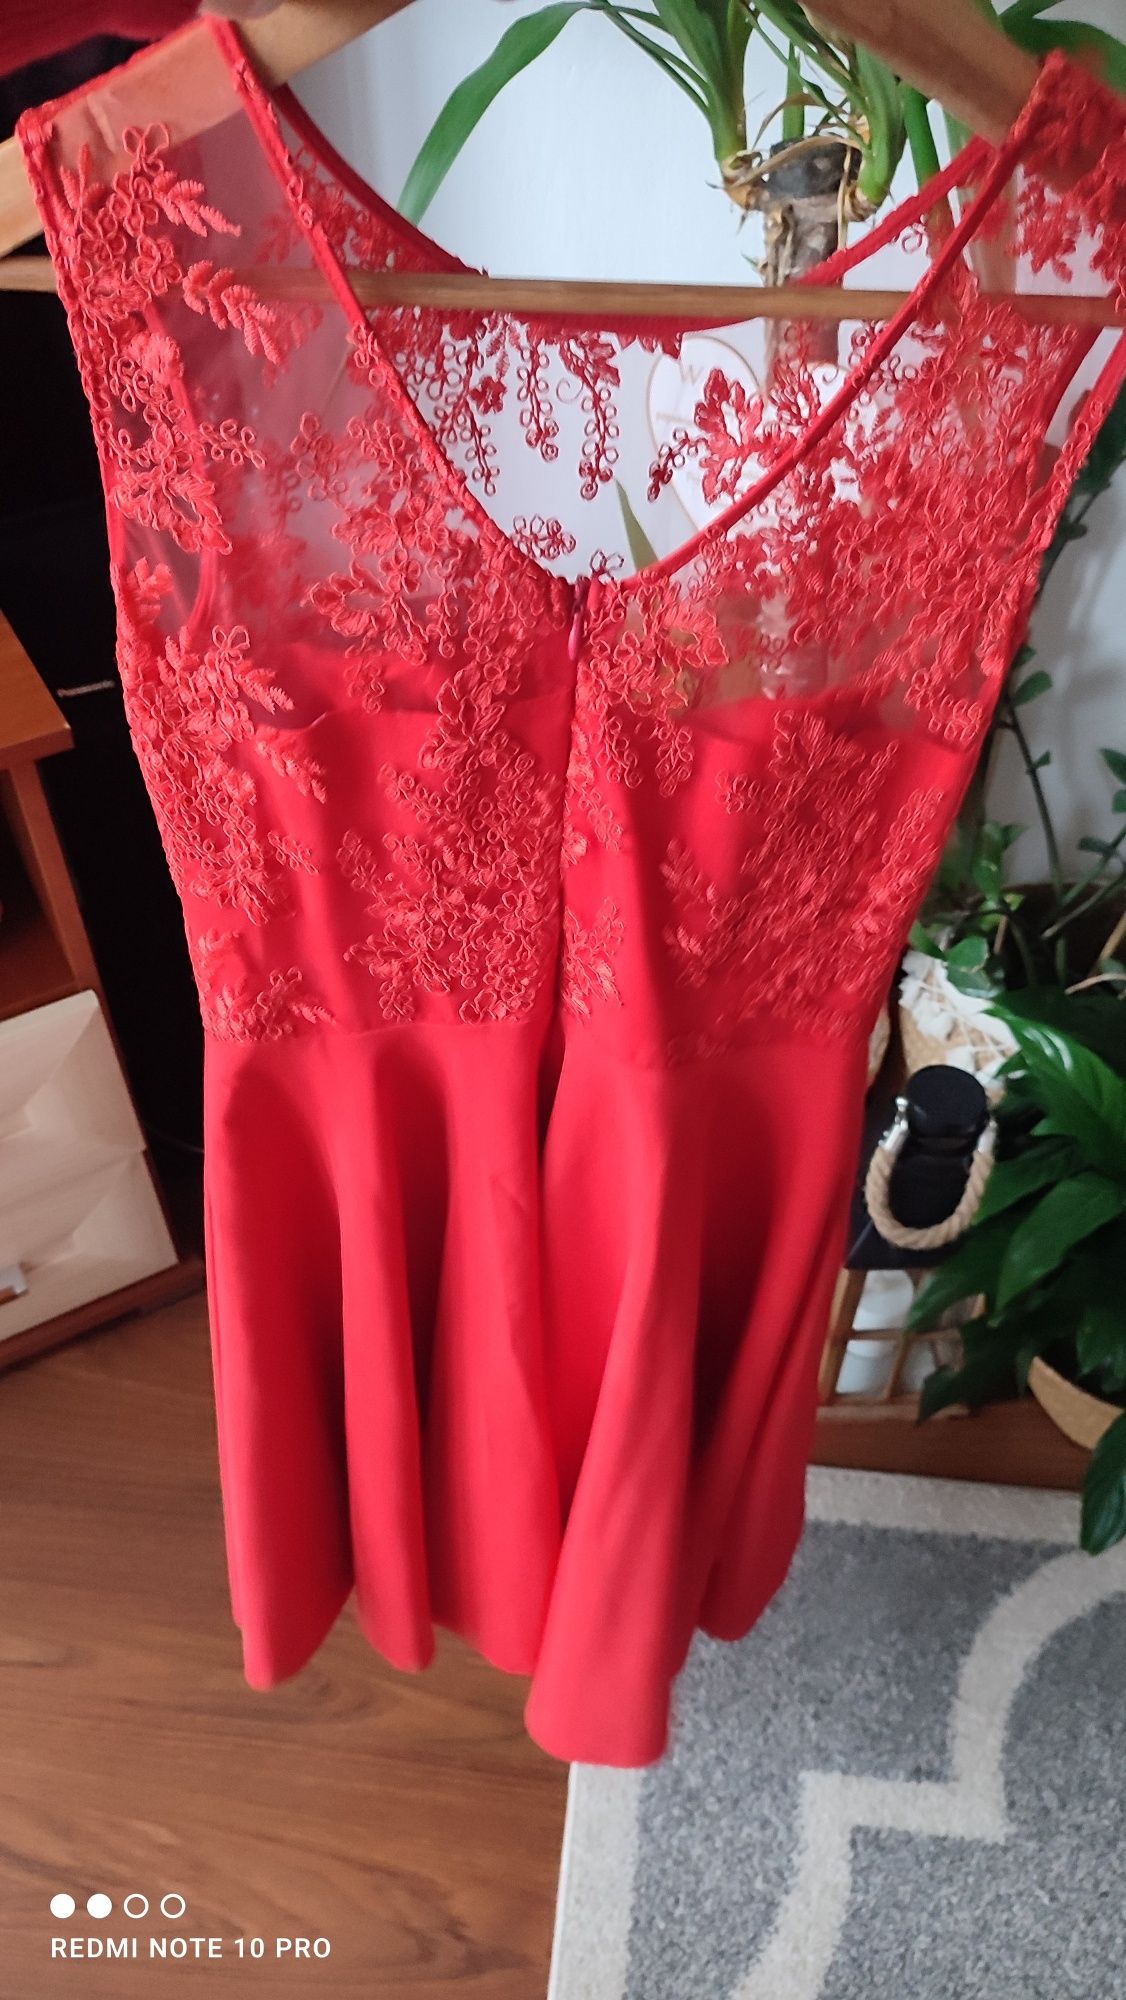 Czerwona sukienka koronkowa na wesele święta śliczna asymetryczna